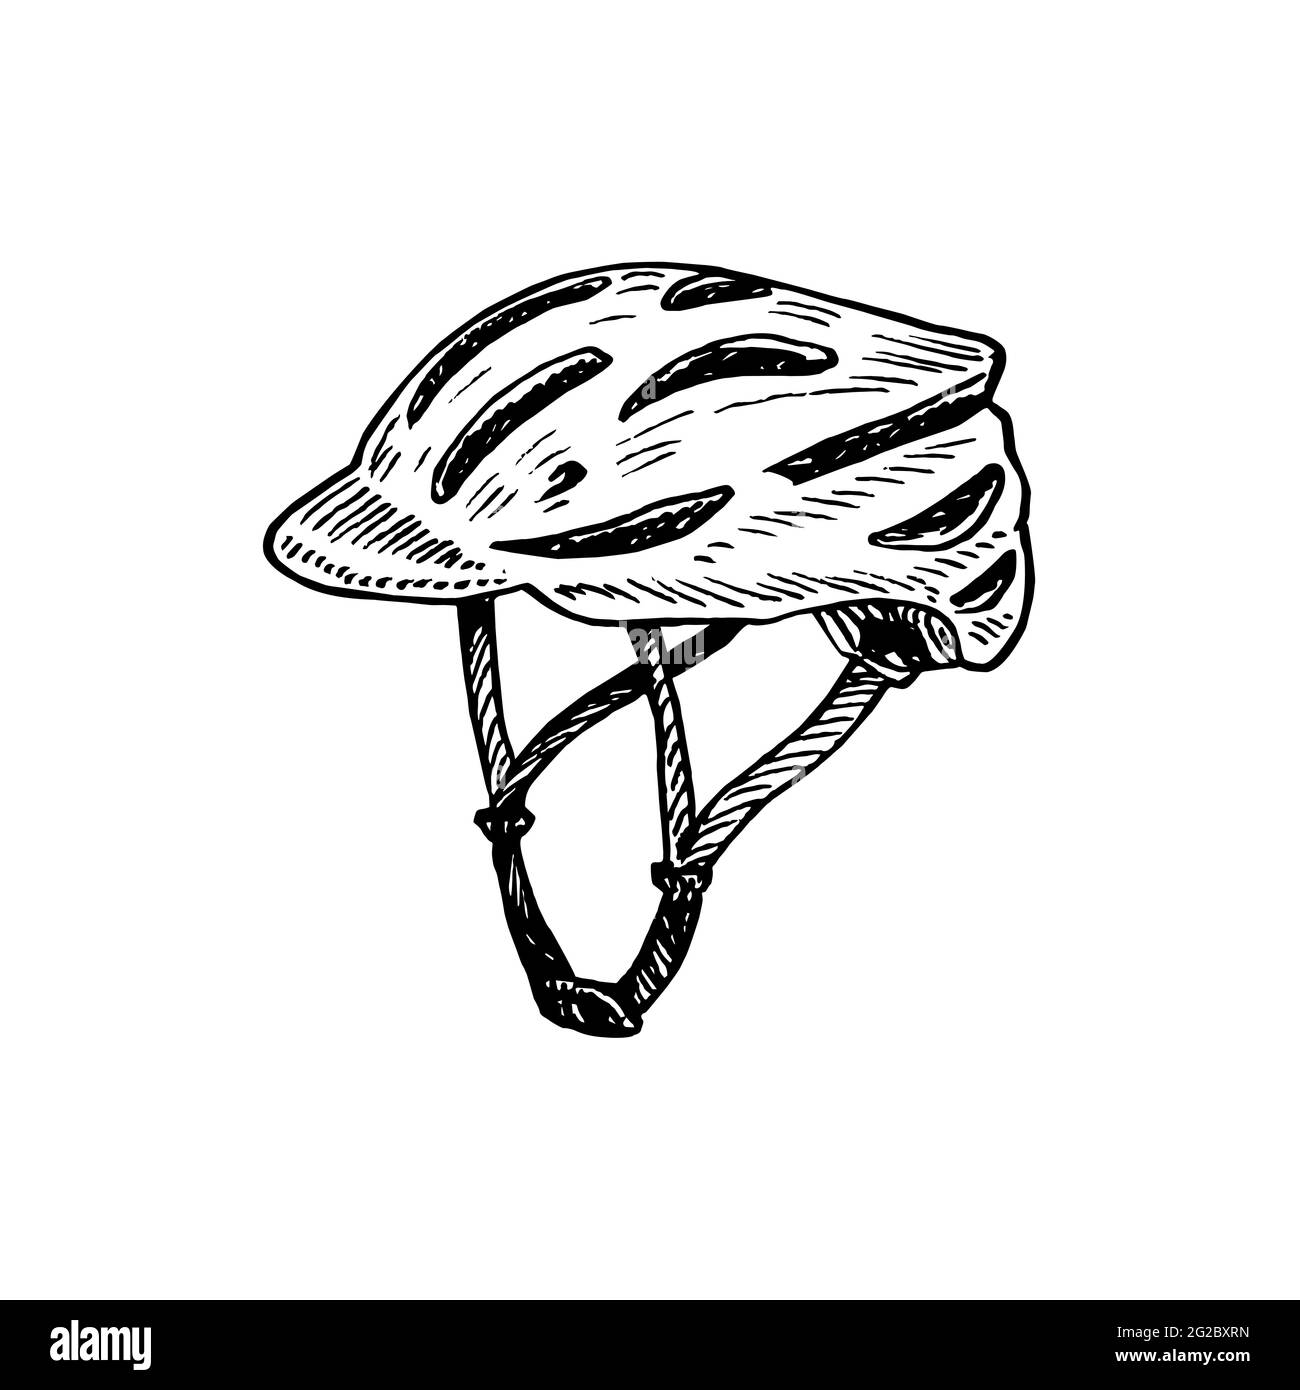 Vista lateral del casco de bicicleta, ilustración de dibujo de tinta de  tipo huecograbado aislada en blanco Fotografía de stock - Alamy